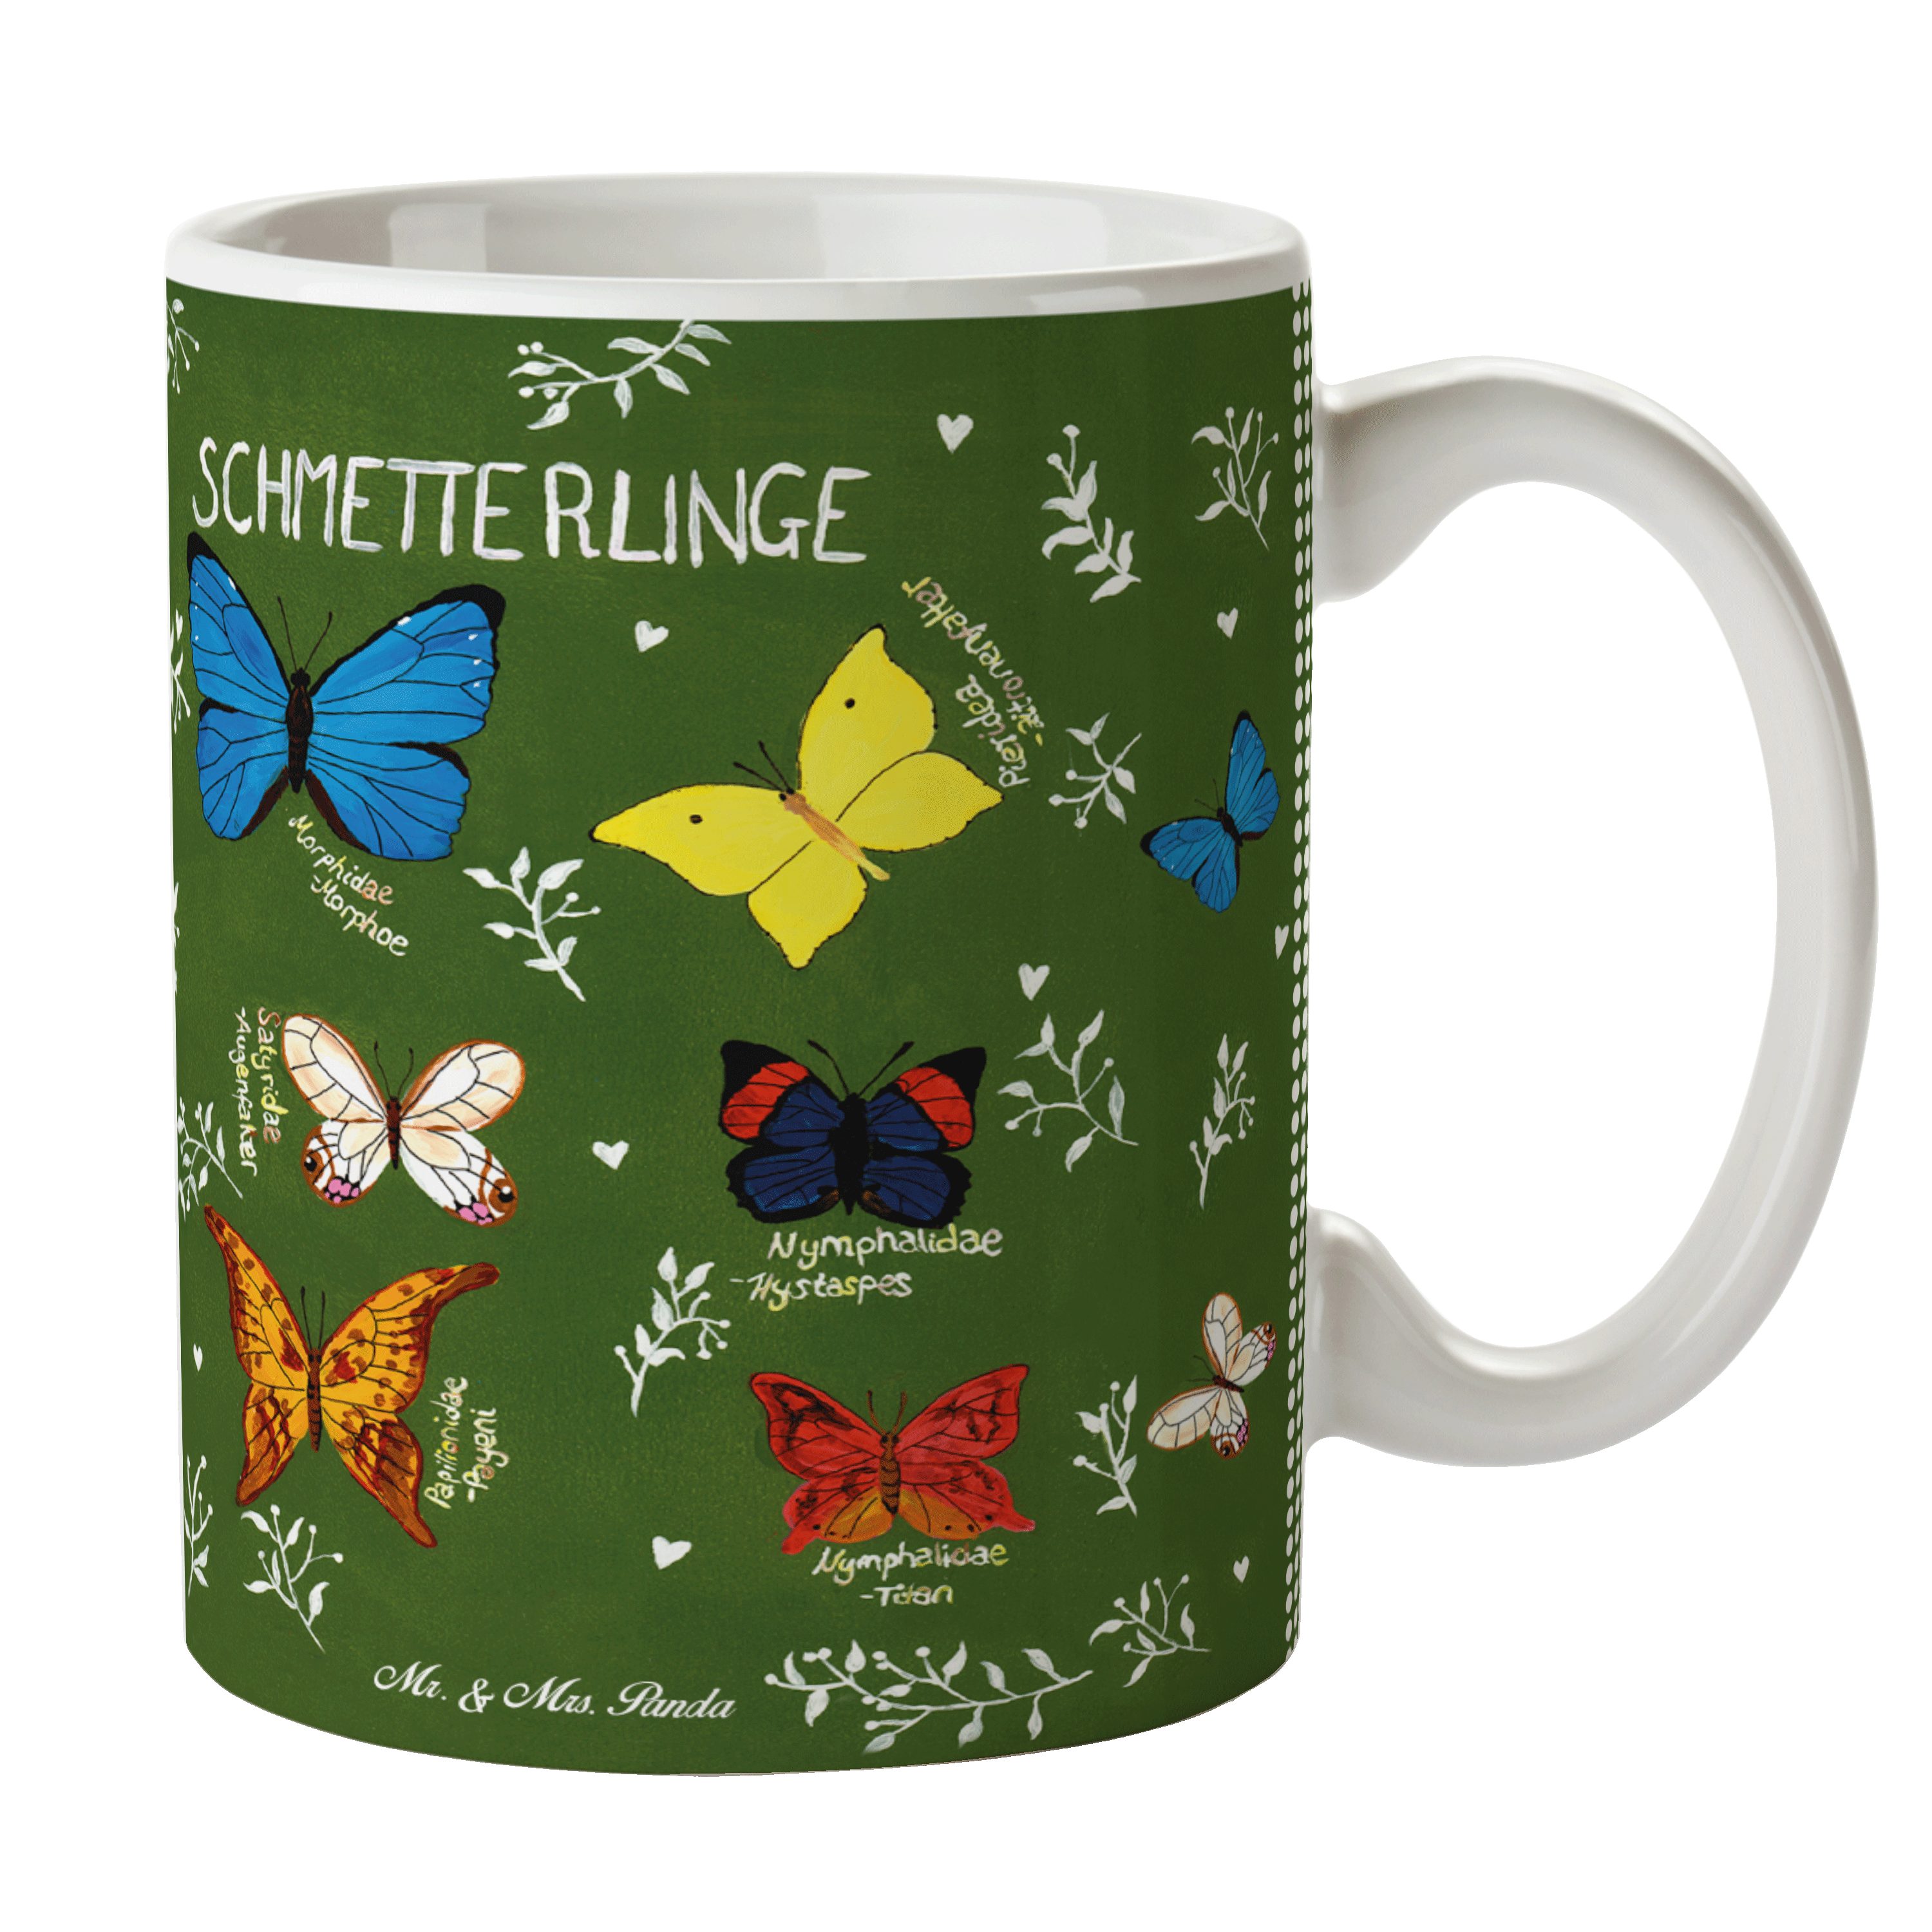 Mr. & Mrs. Panda Tasse Schmetterlinge - Geschenk, Geschenk Tasse, Tasse Sprüche, Blumen Moti, Keramik